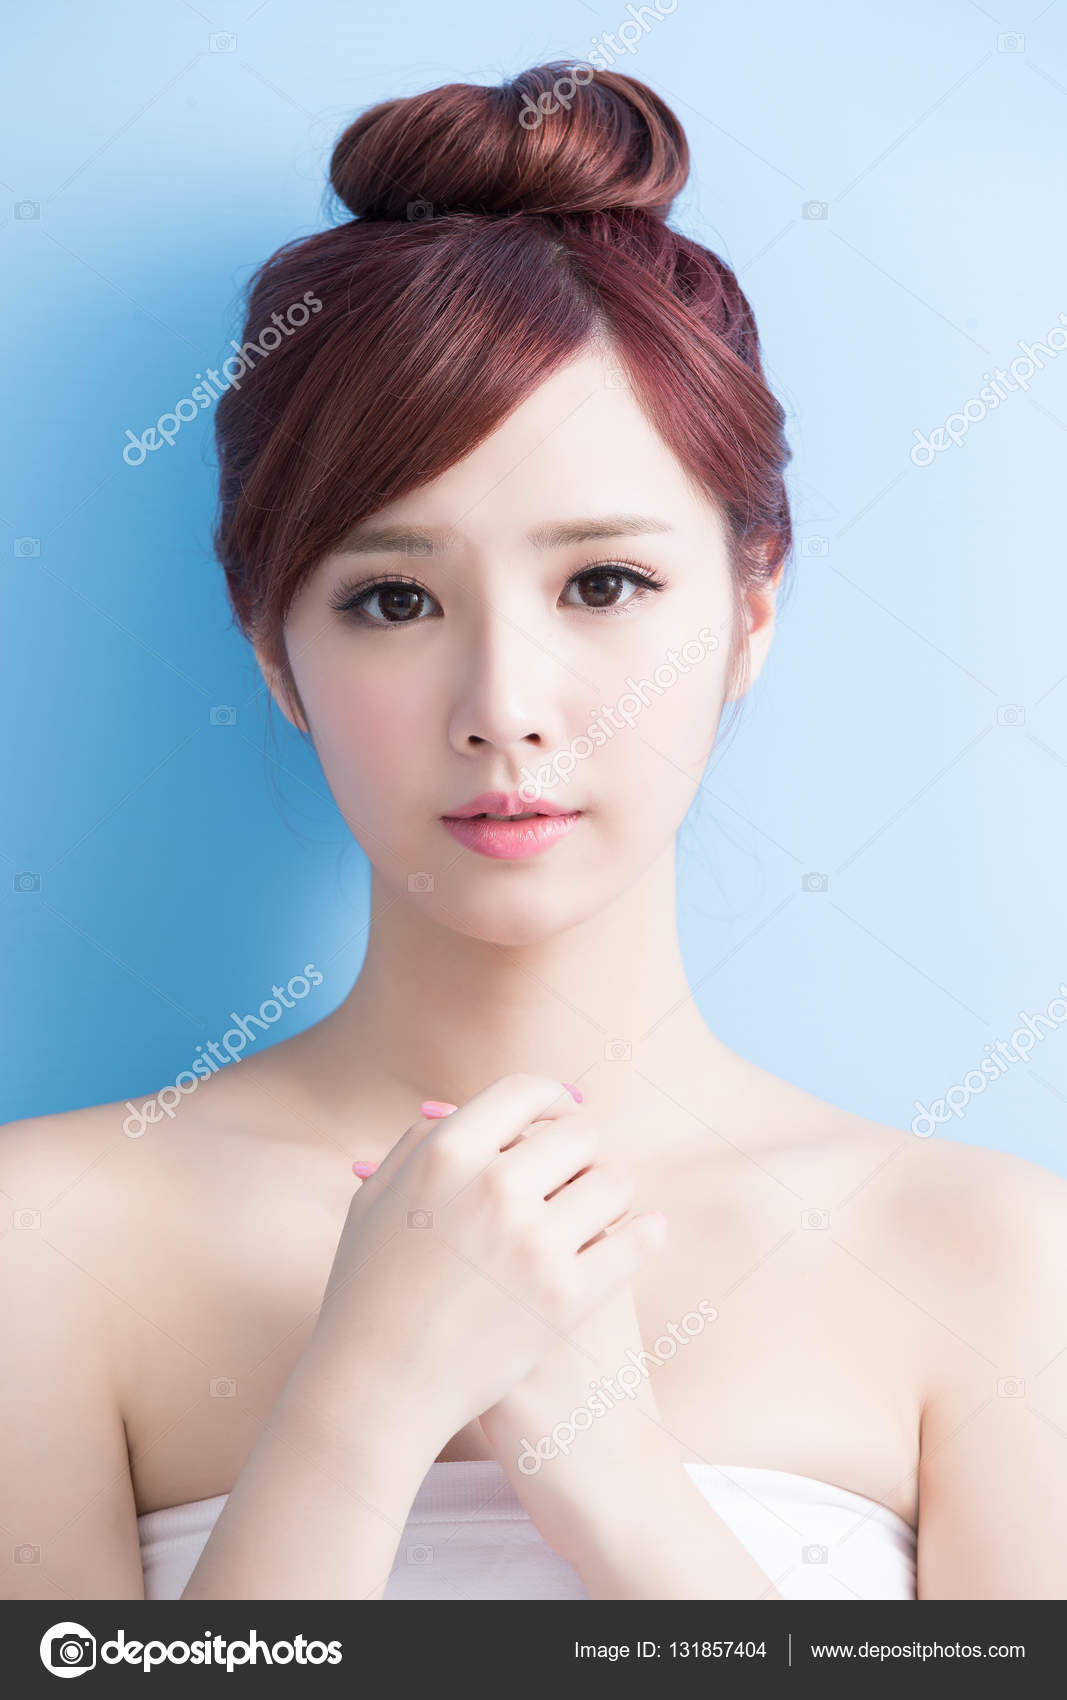 Chinese model photoshoot